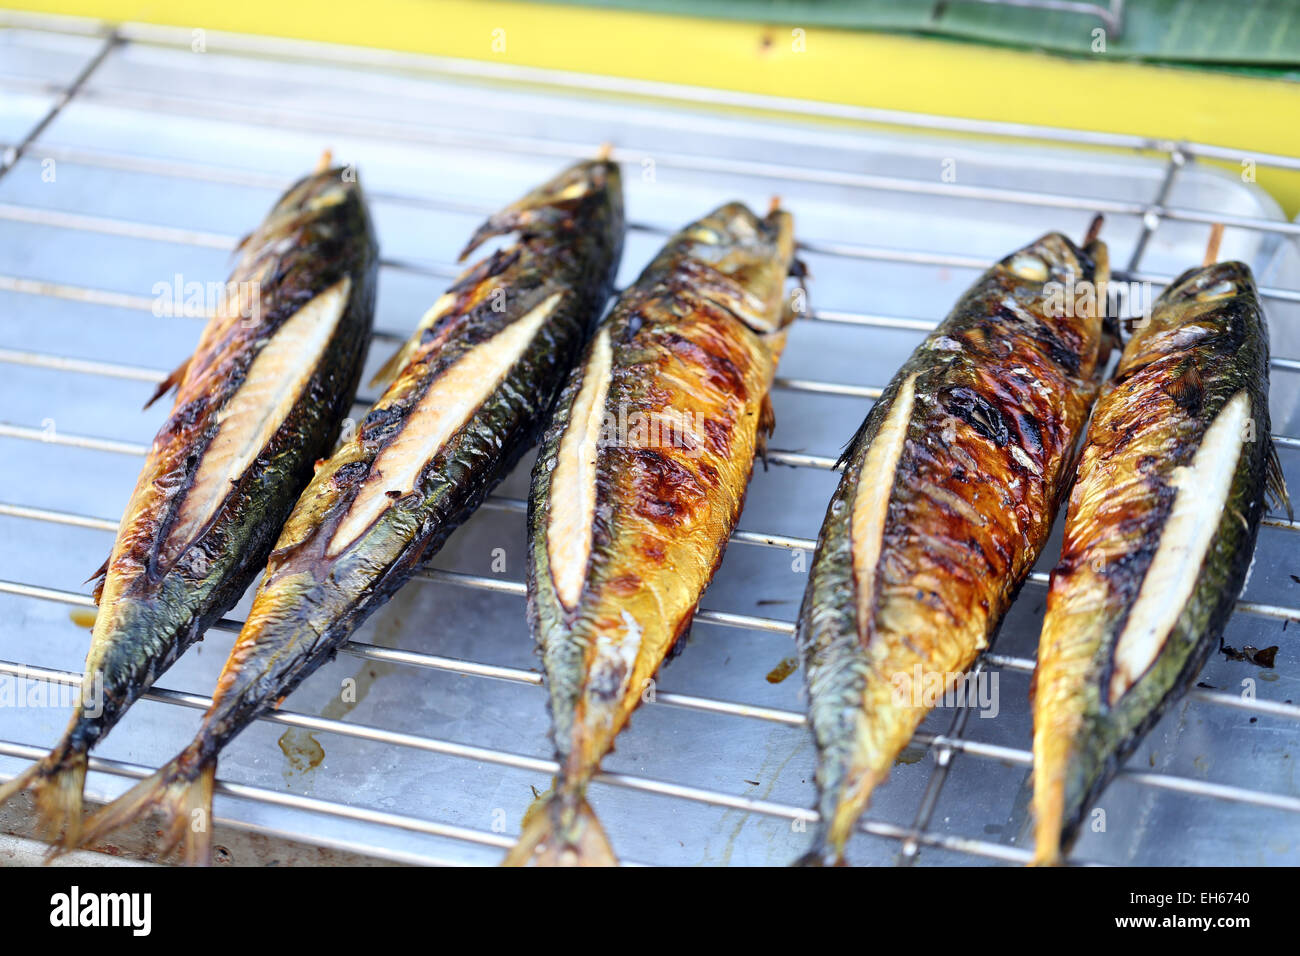 Grigliata di pesce bonito nel mercato. Foto Stock